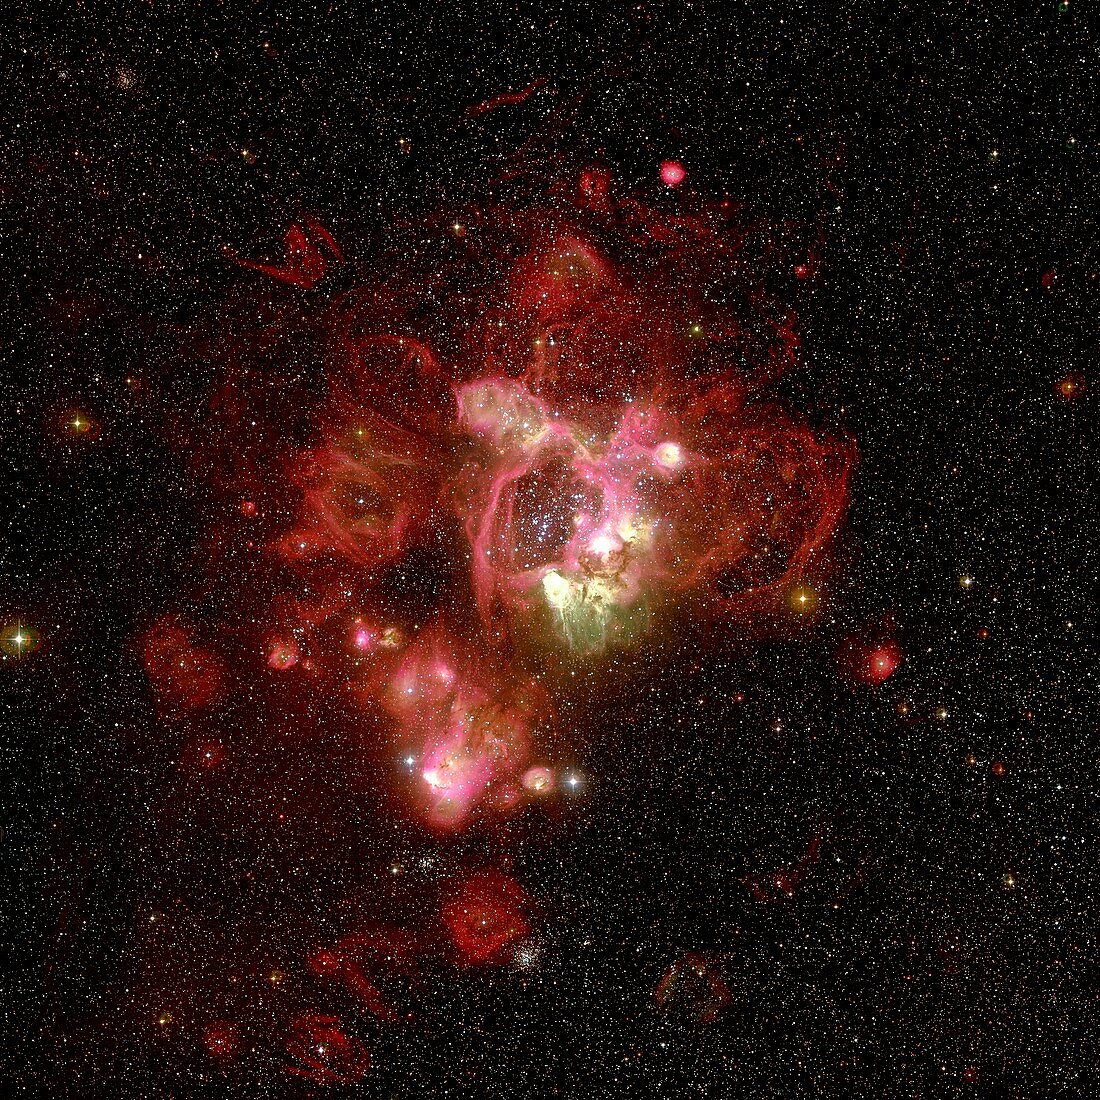 Emission nebula N44